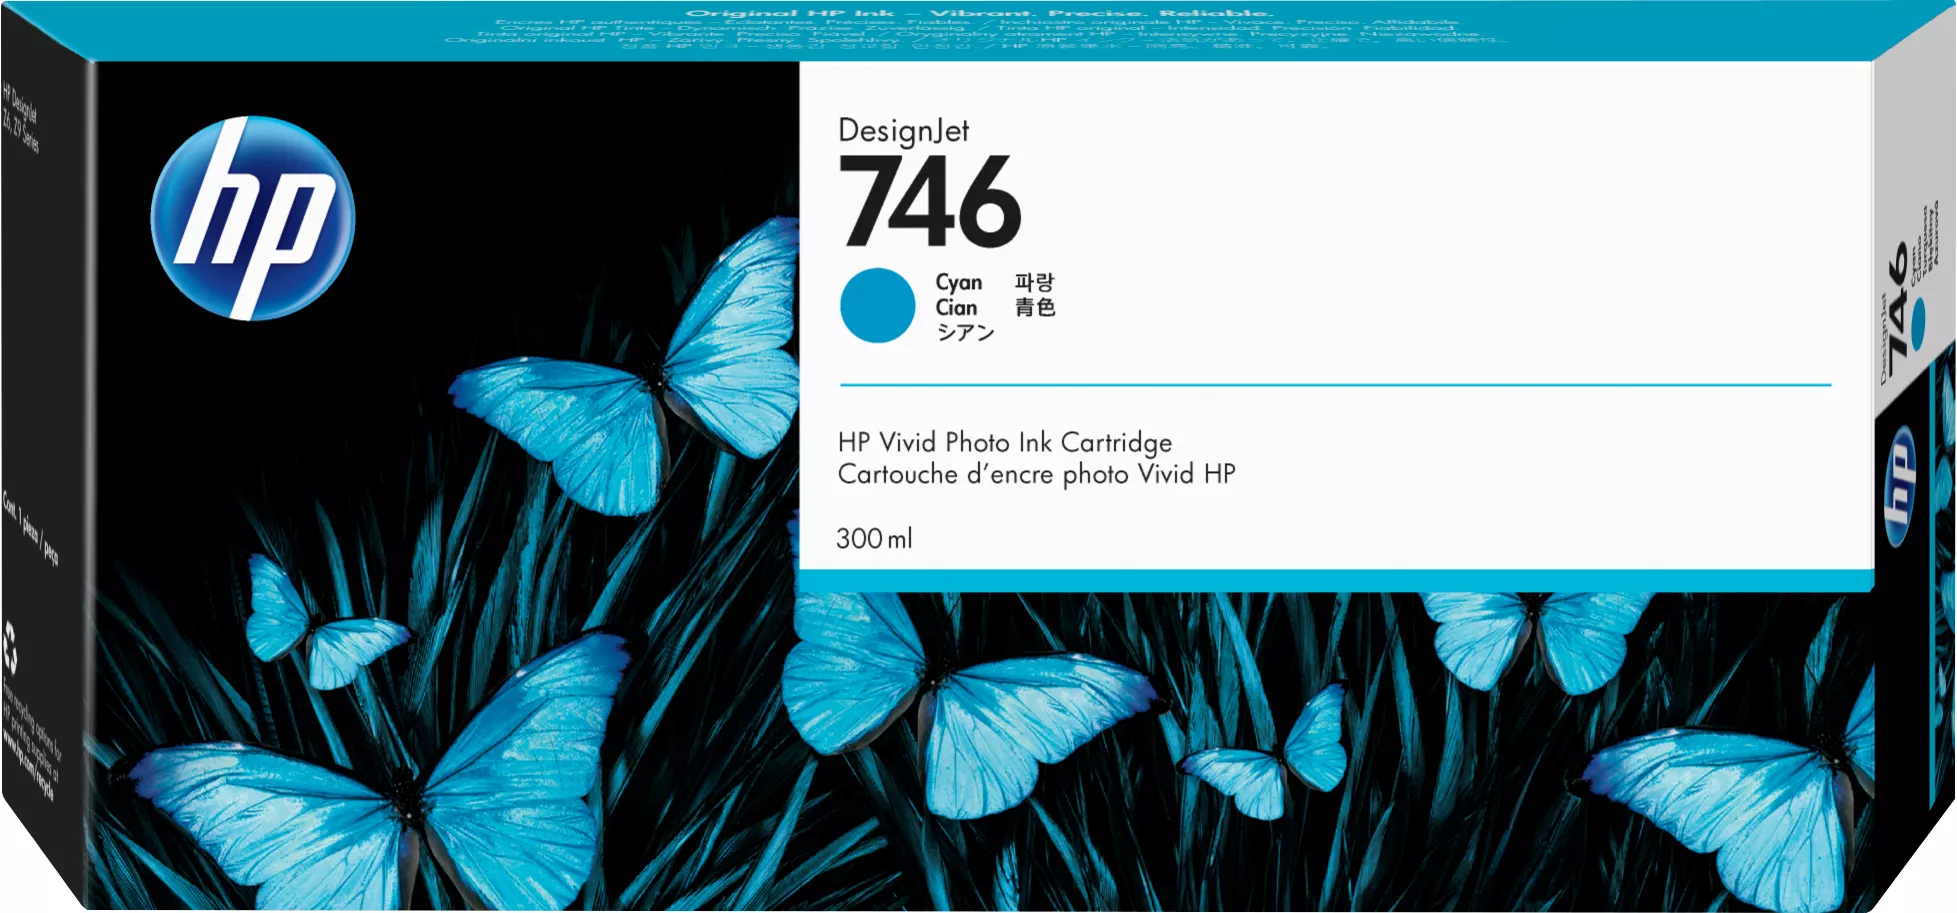 Vente HP 746 300-ml Cyan Ink Cartridge HP au meilleur prix - visuel 2